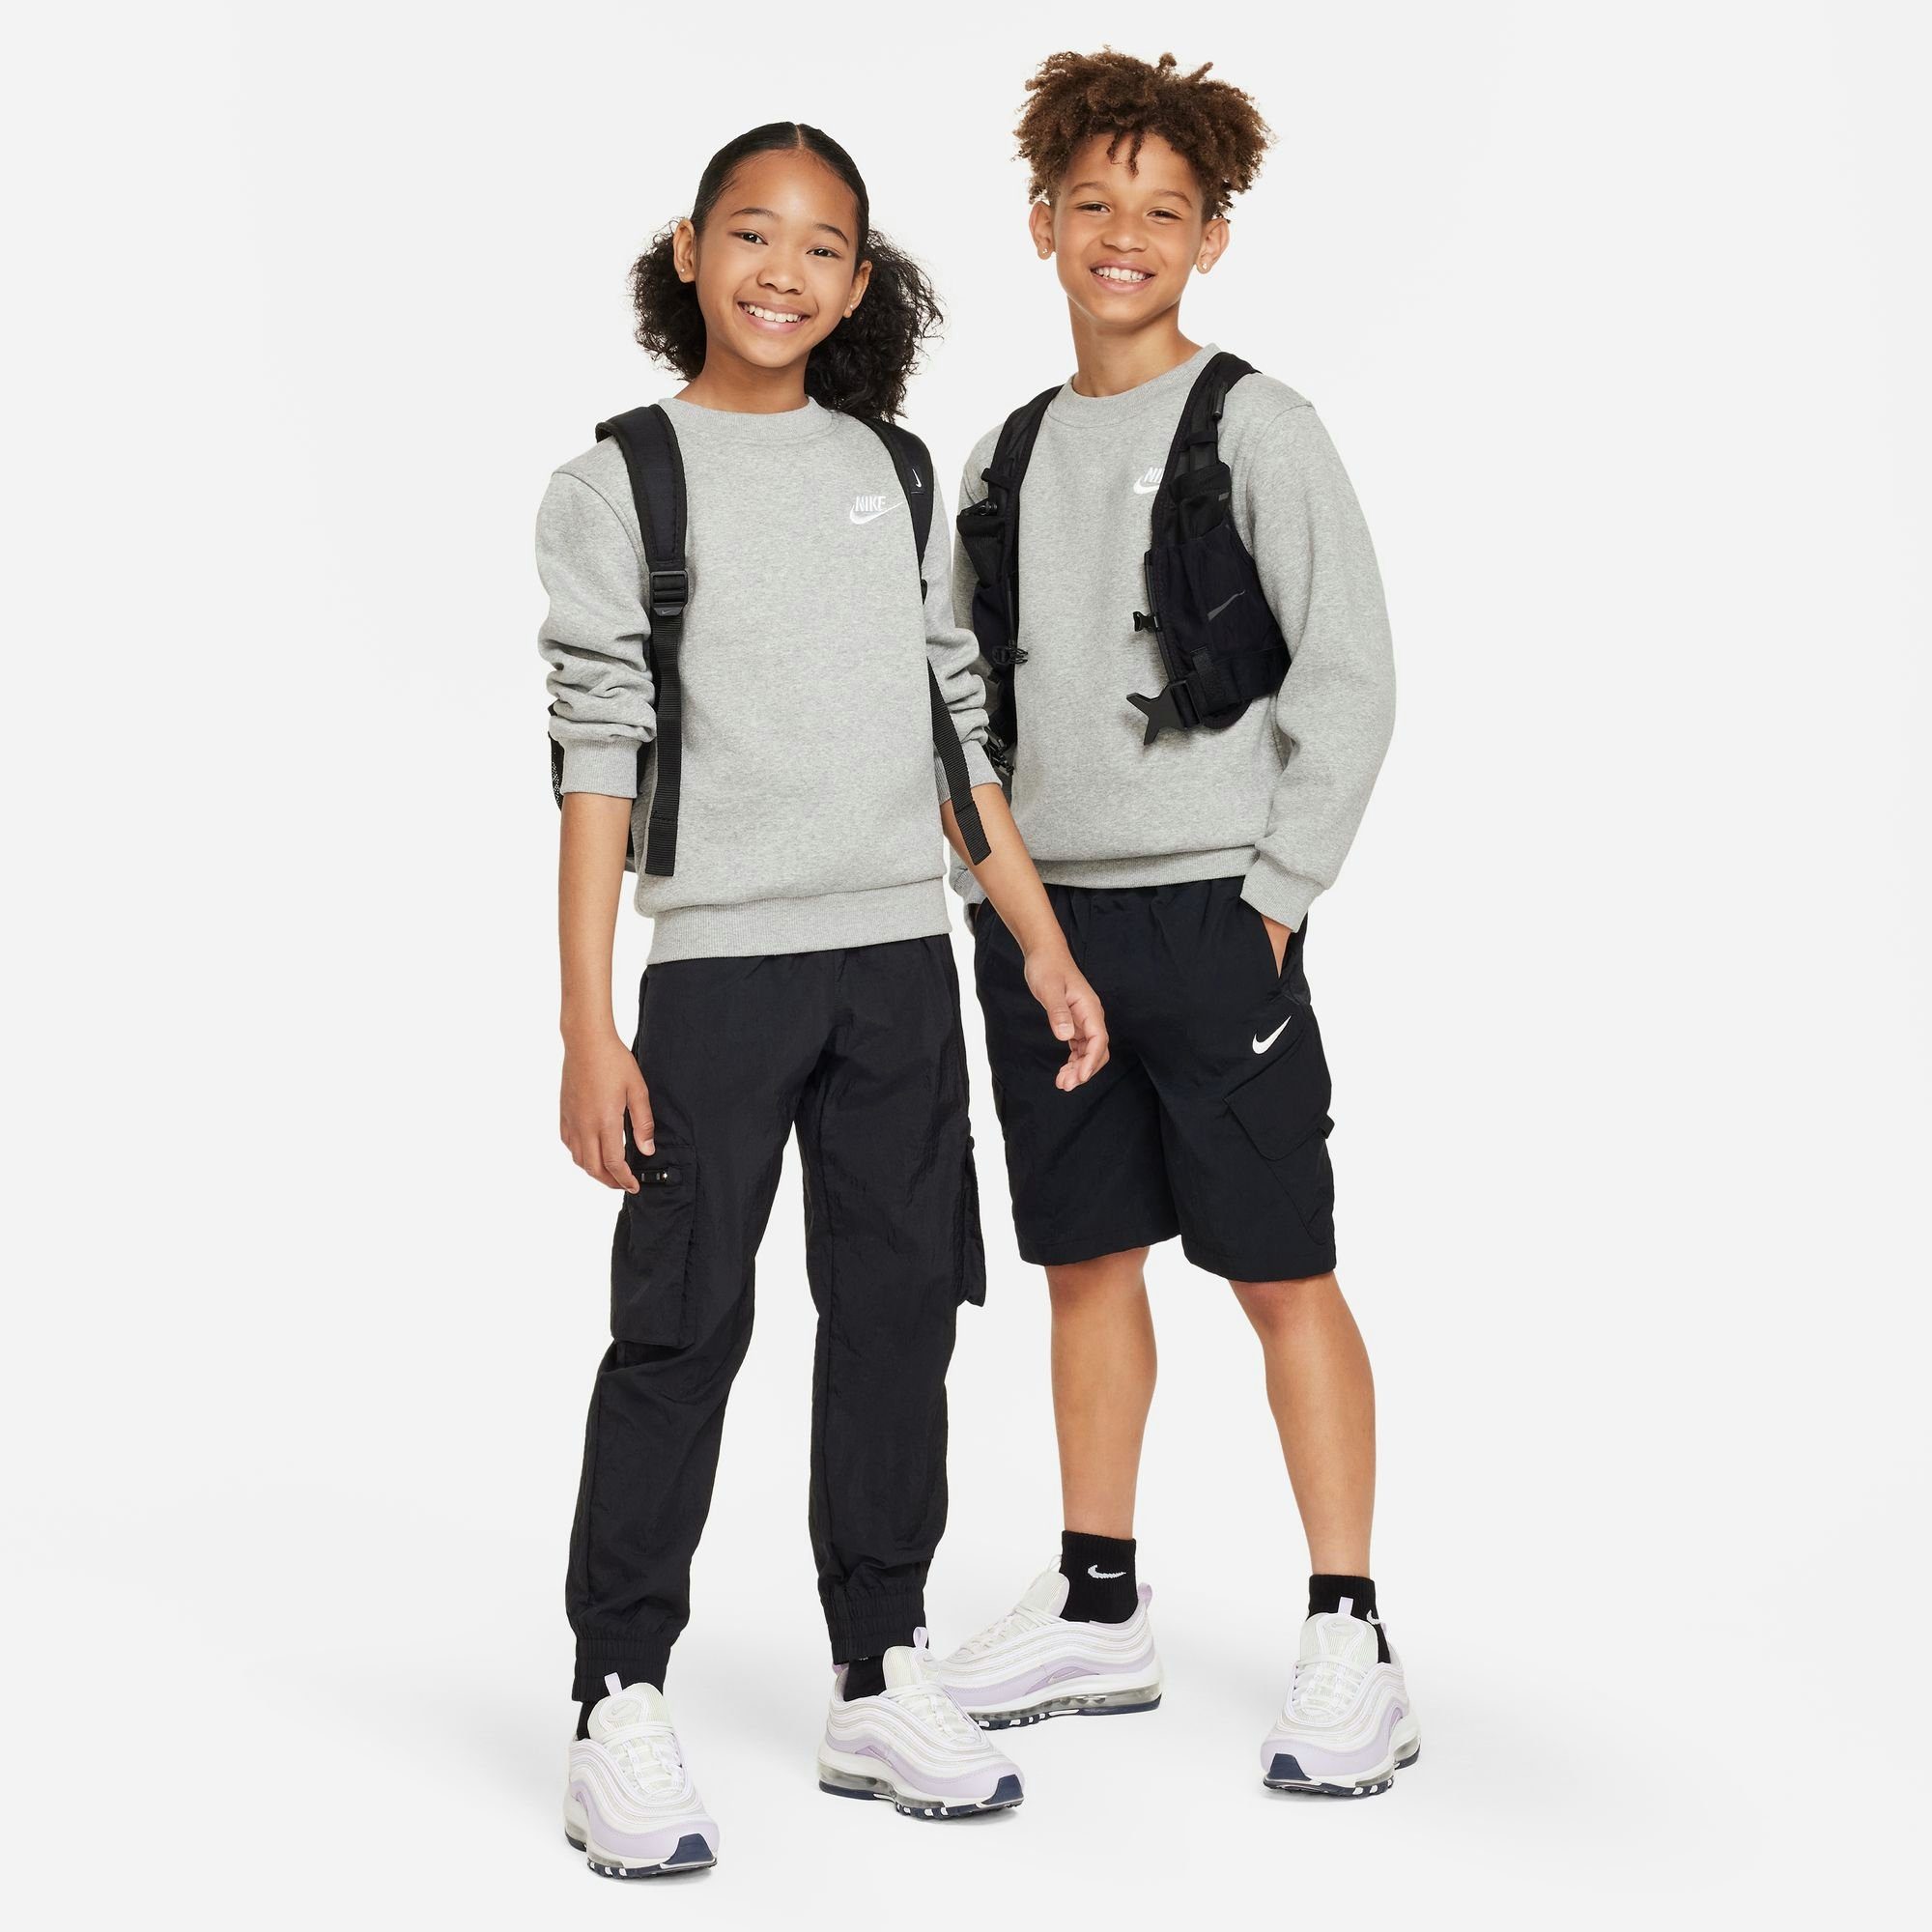 HEATHER/WHITE FLEECE CLUB Sportswear GREY SWEATSHIRT DK BIG Nike Sweatshirt KIDS'